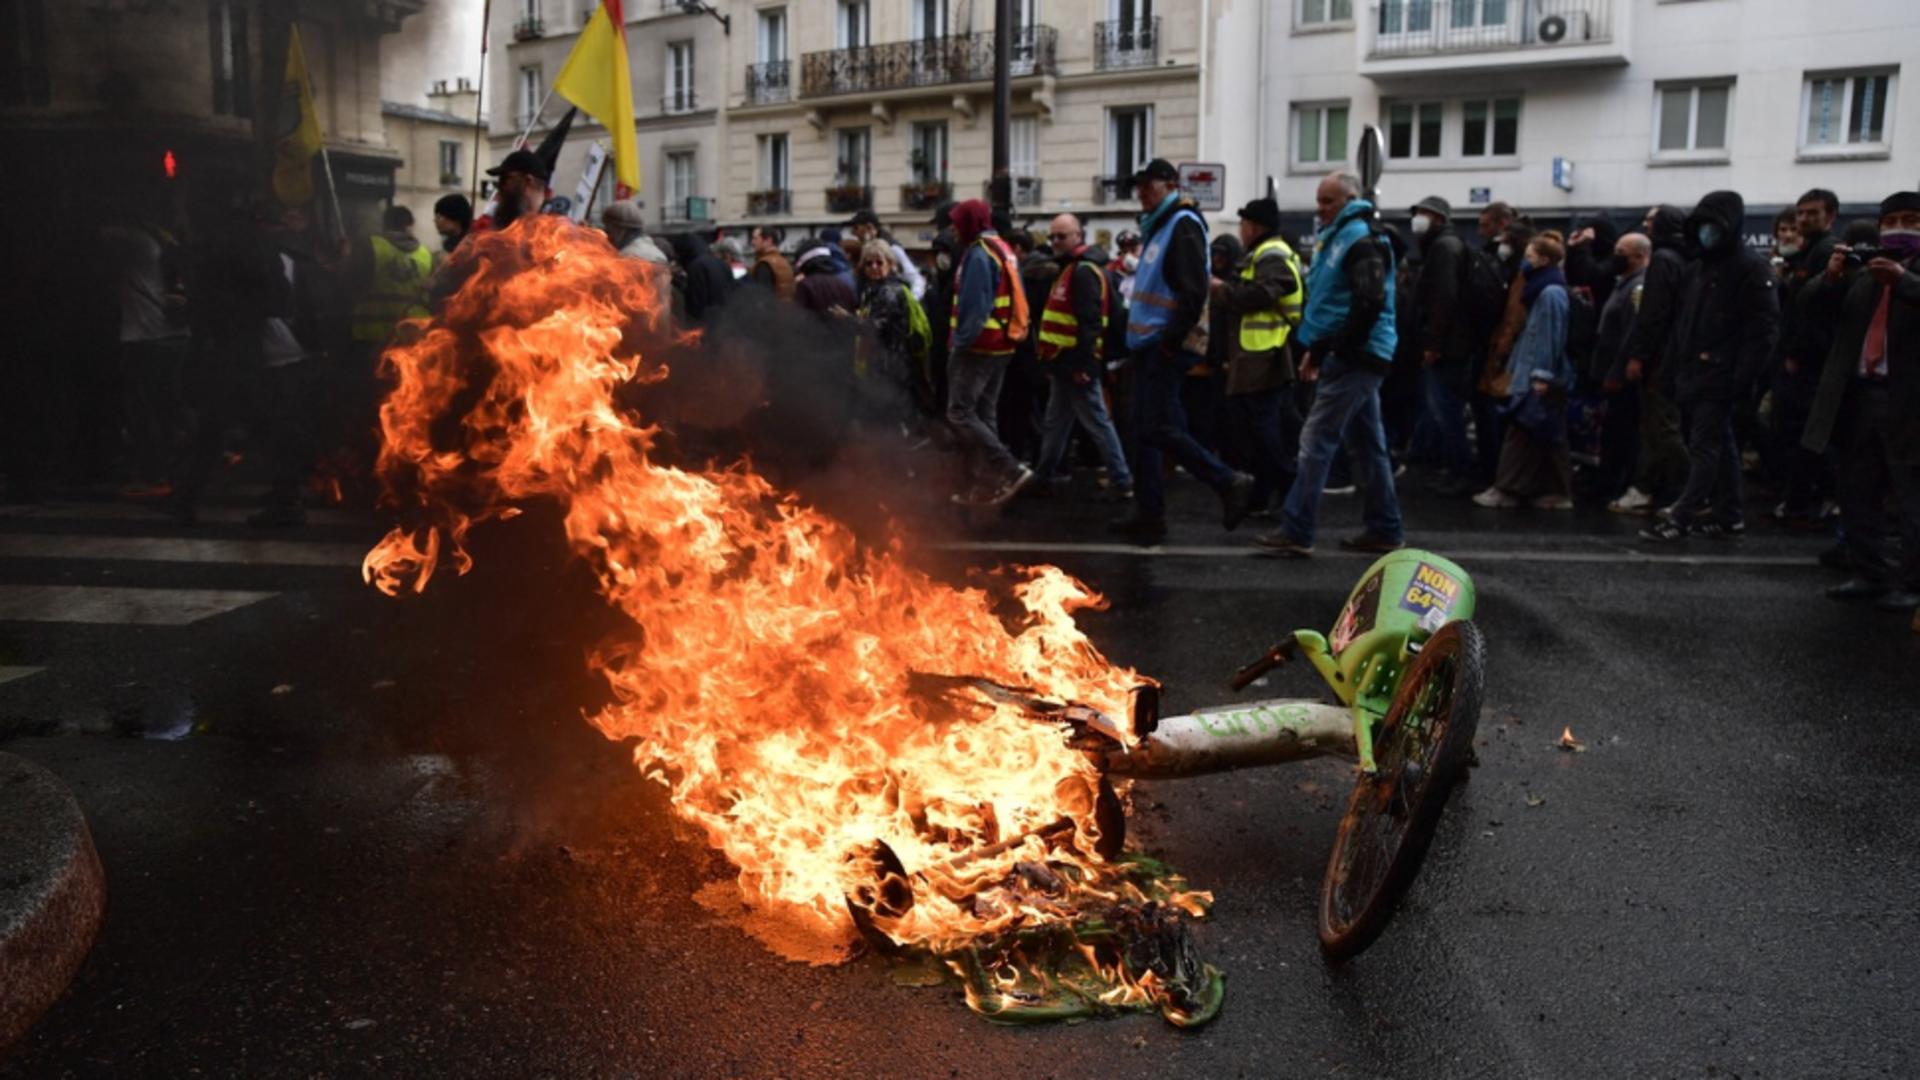 HAOS în Franța. Violențe în toată țara: Proteste cu peste 2 milioane de oameni - Manechin cu chipul lui Macron, în flăcări - VIDEO